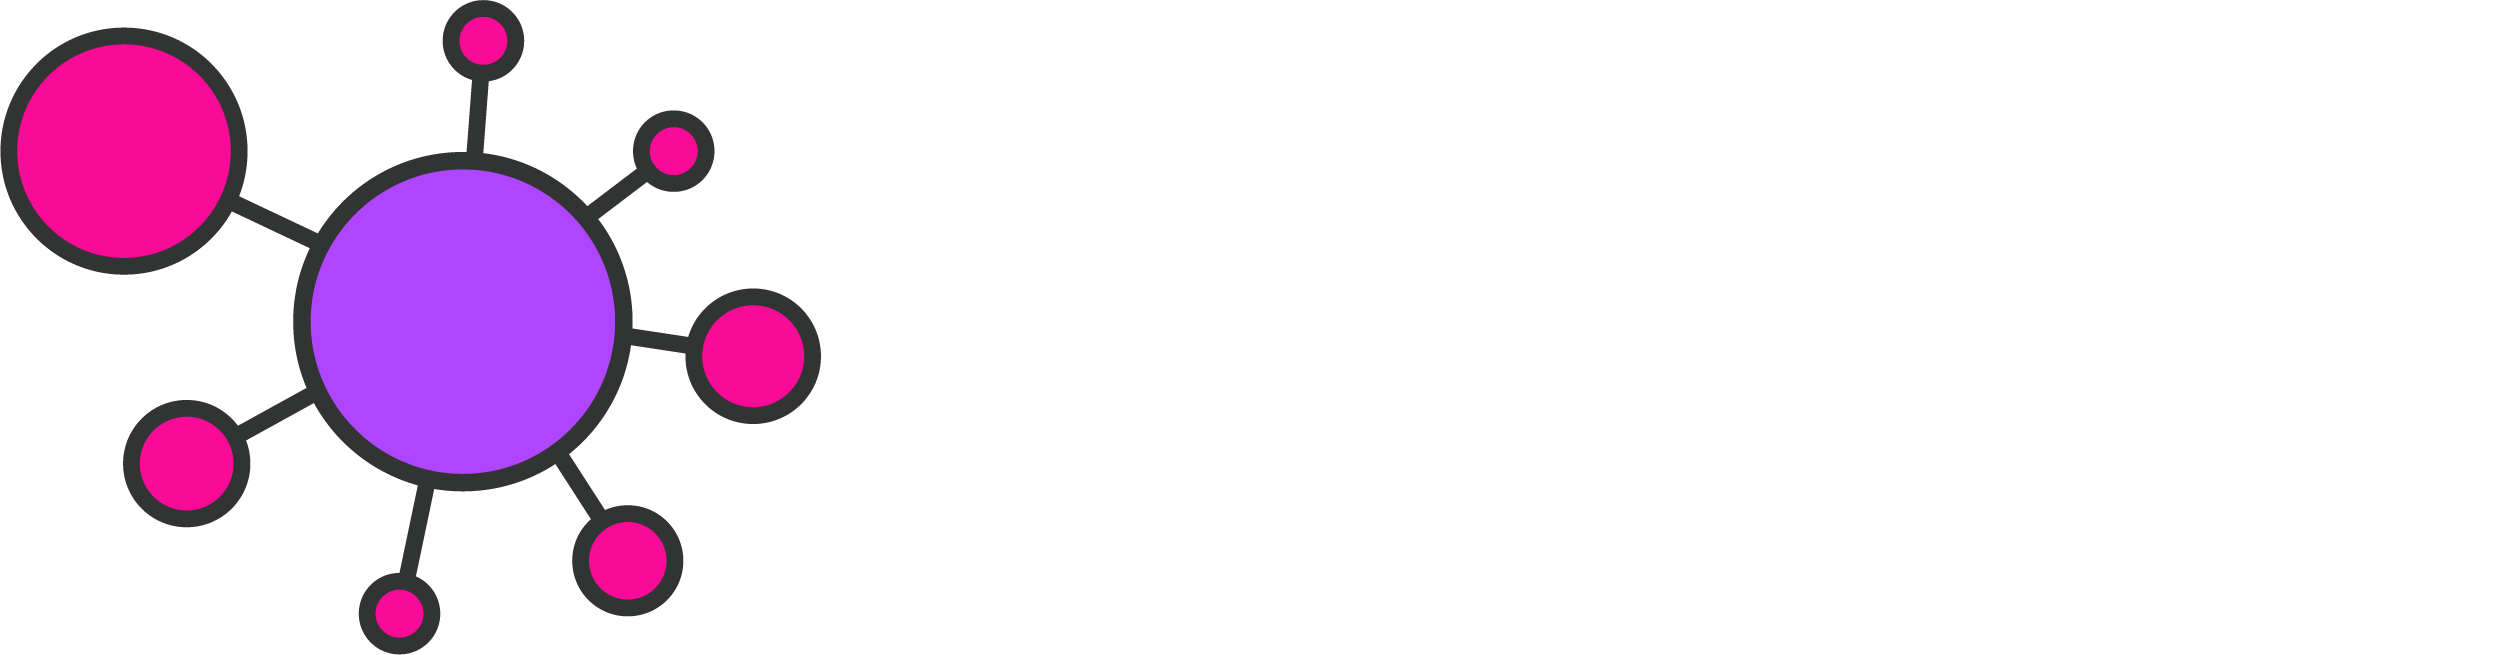 PncsHub logo